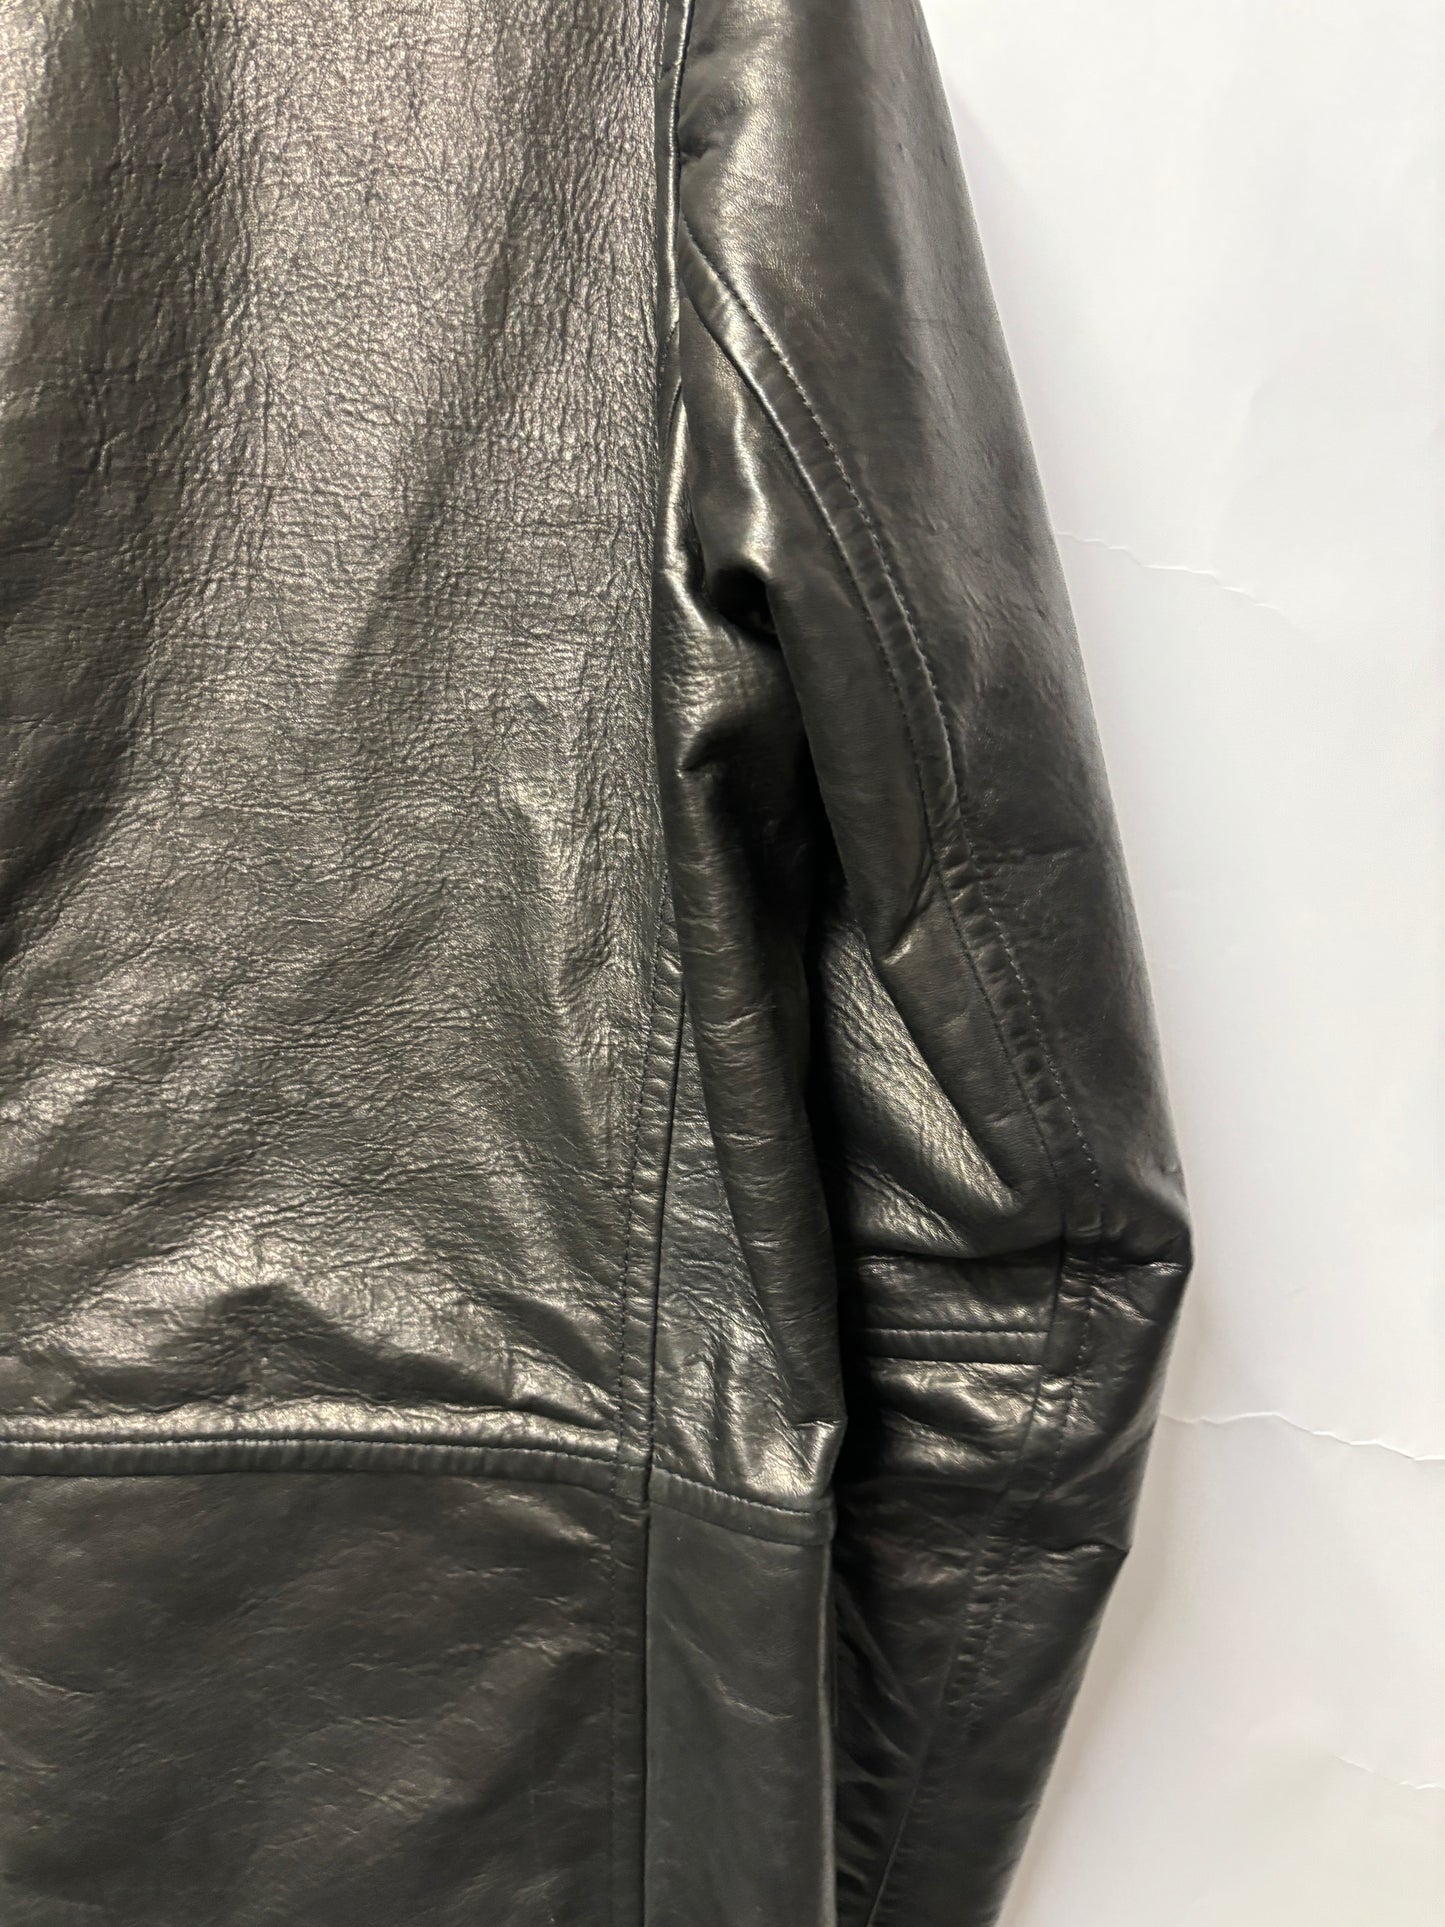 Joseph Black Leather Jacket 40